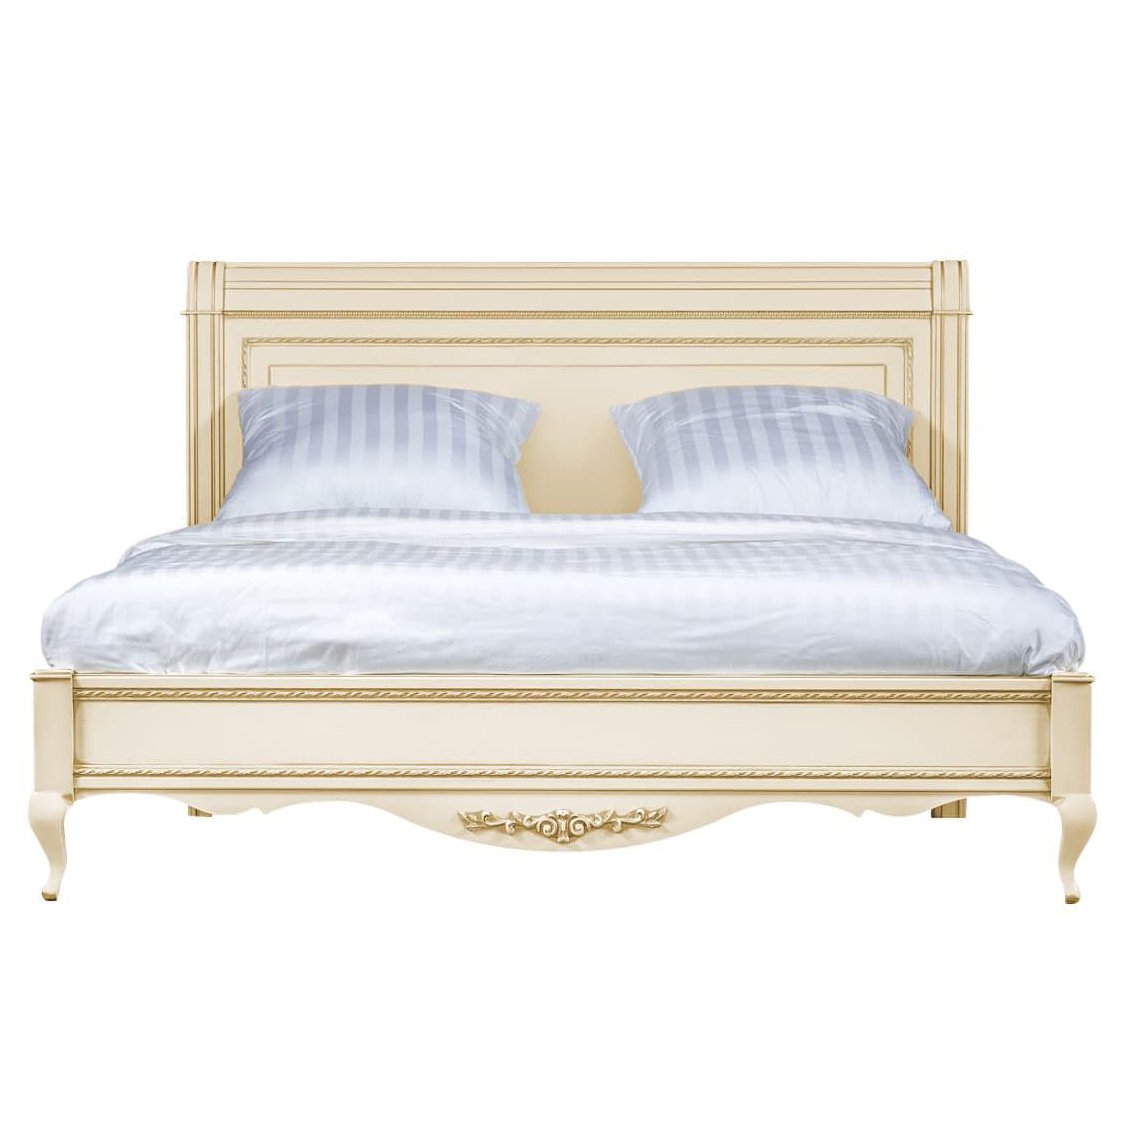 Кровать Timber Неаполь, двуспальная 160x200 см цвет: ваниль с золотом (T-536)T-536